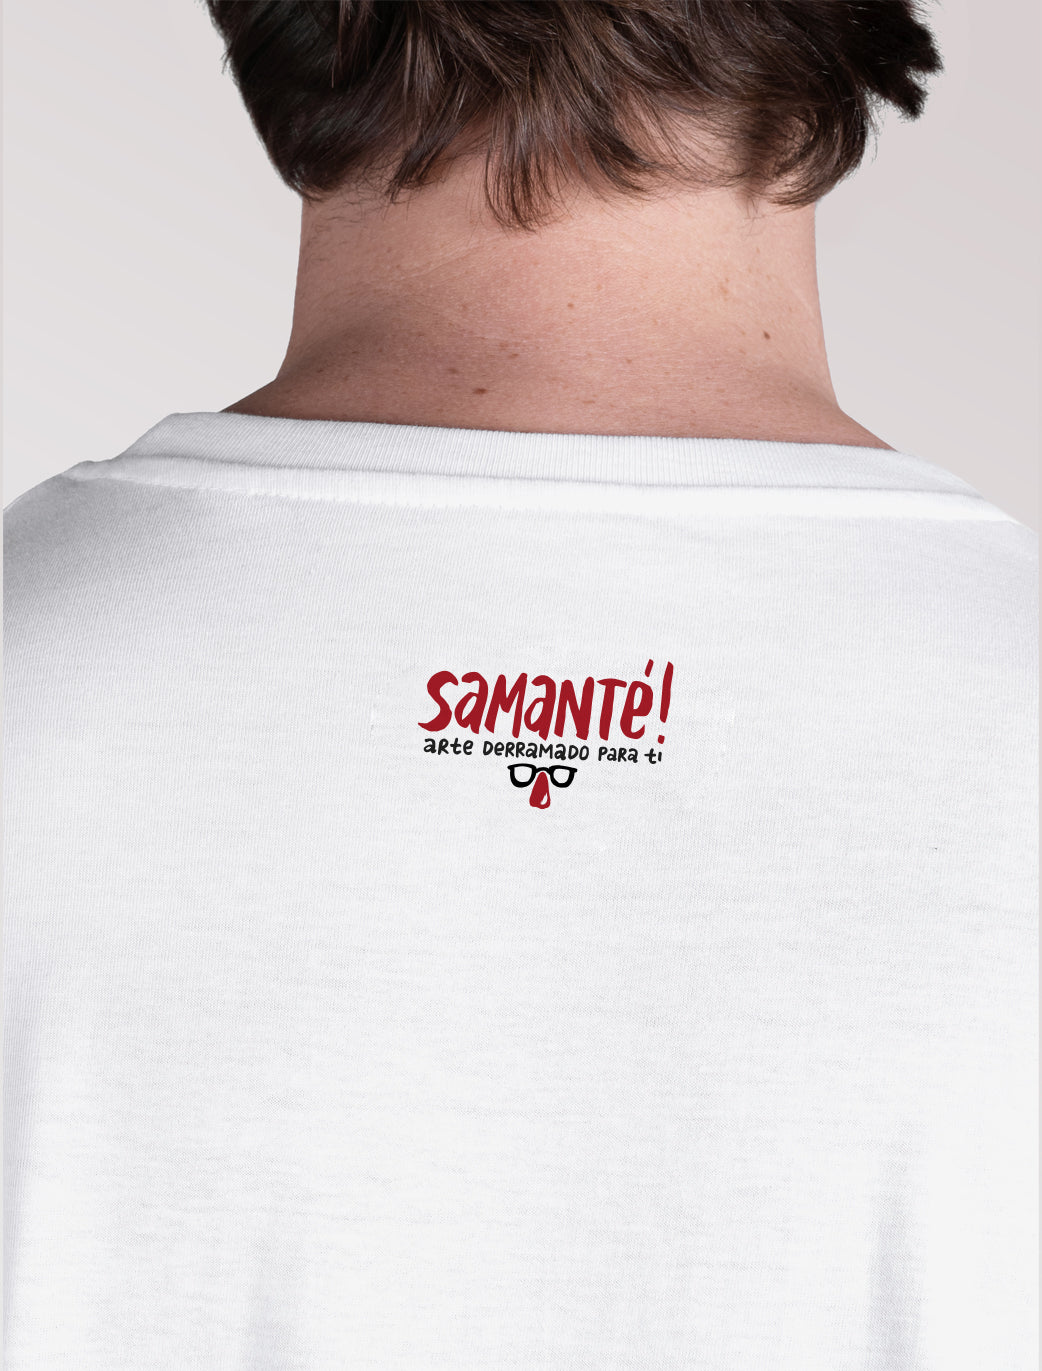 Camiseta x Ricardo Cavolo para Samanté!